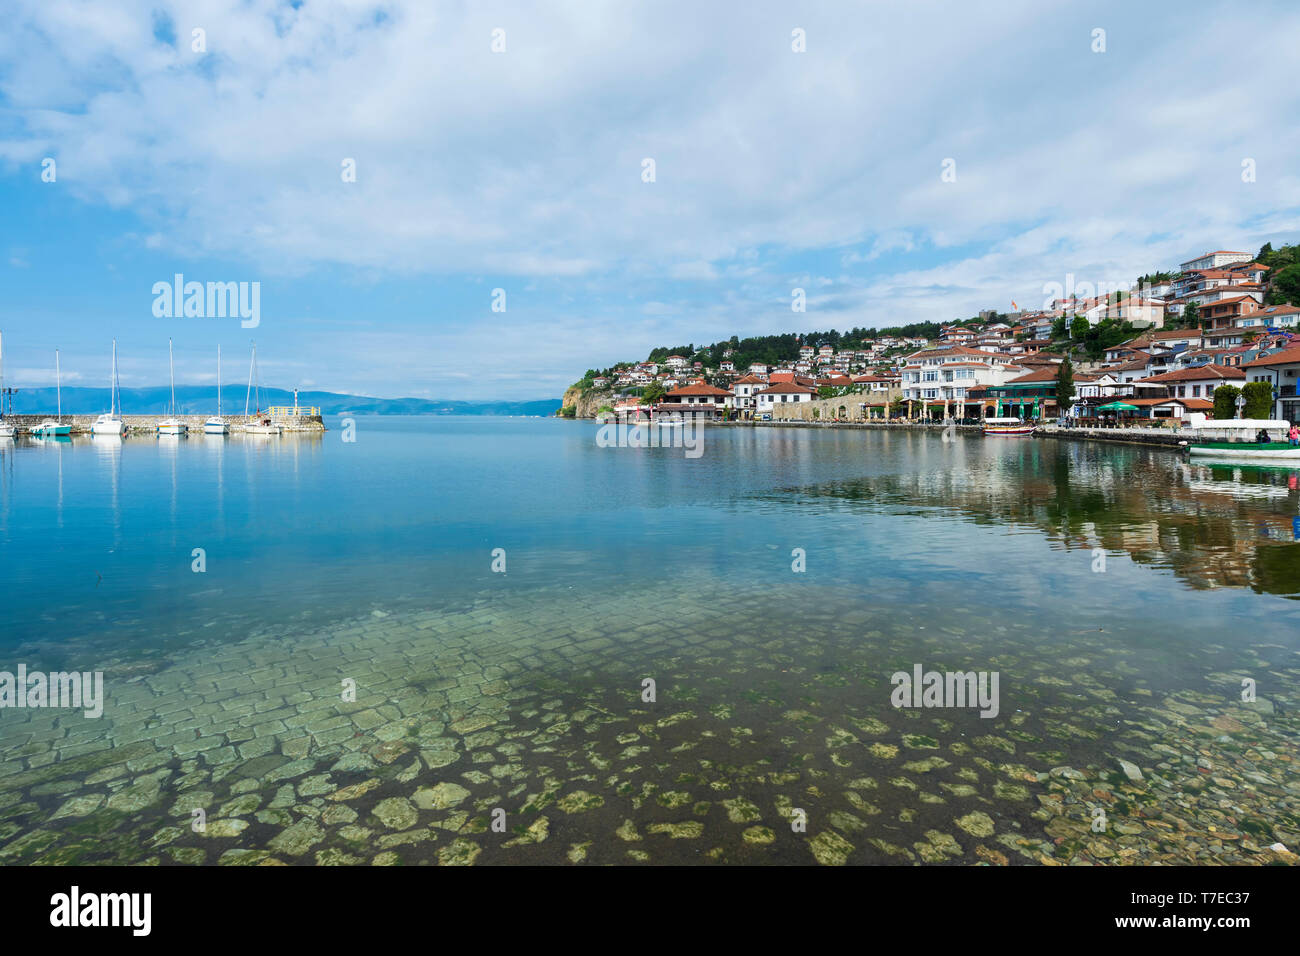 Ohrid old city, marina, Macedonia Stock Photo